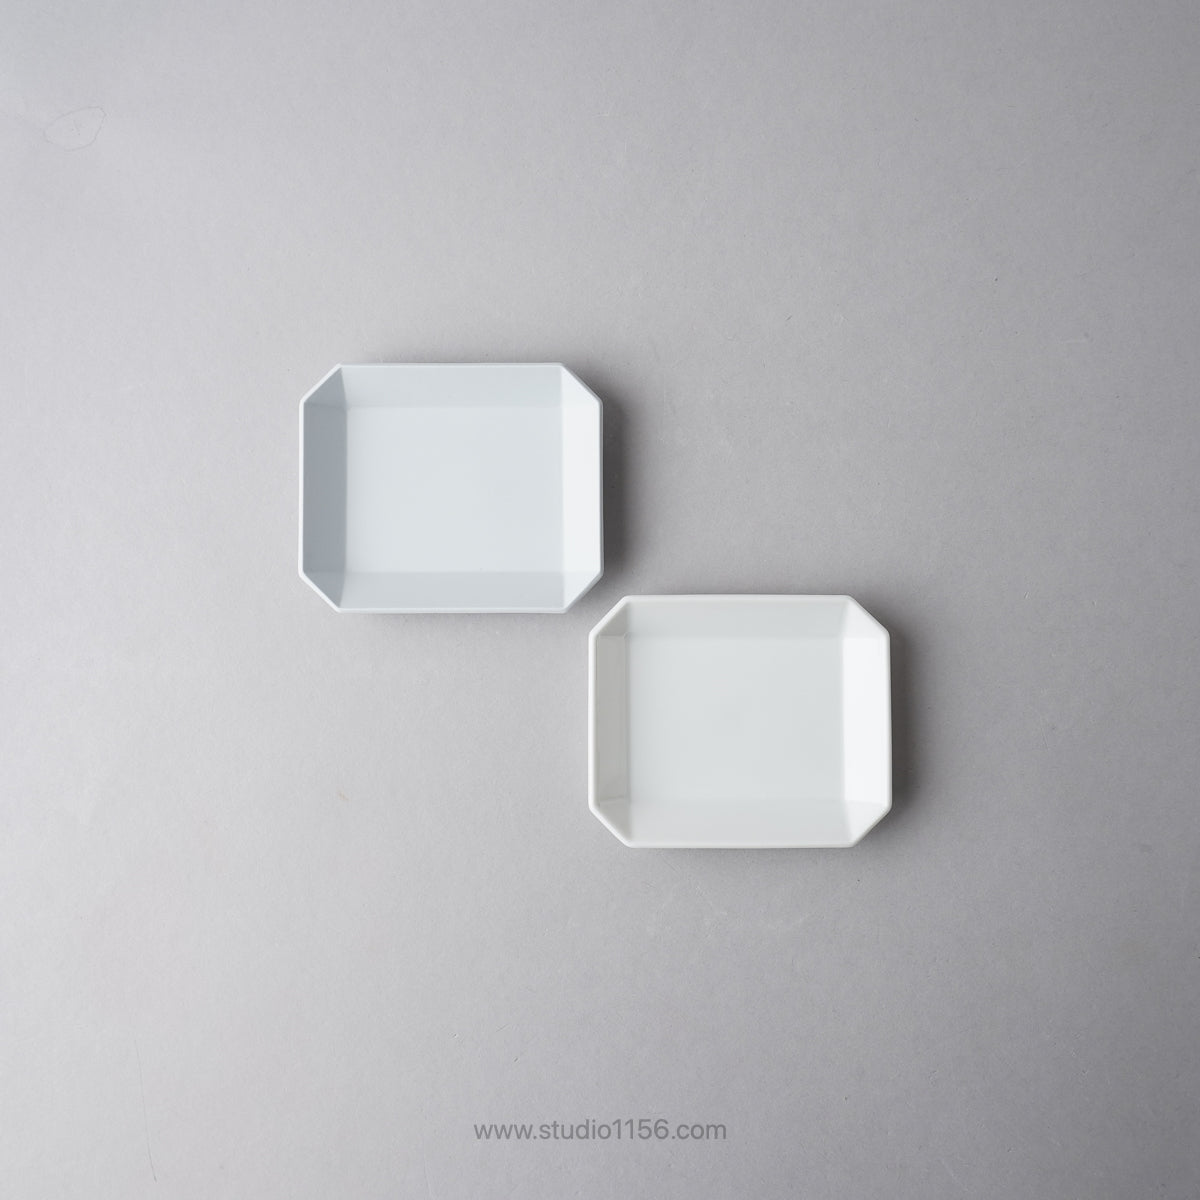 有田焼 スクエアプレート プレーン グレー / TY Square Plate Plain Gray 1616 / Arita Japan Studio1156